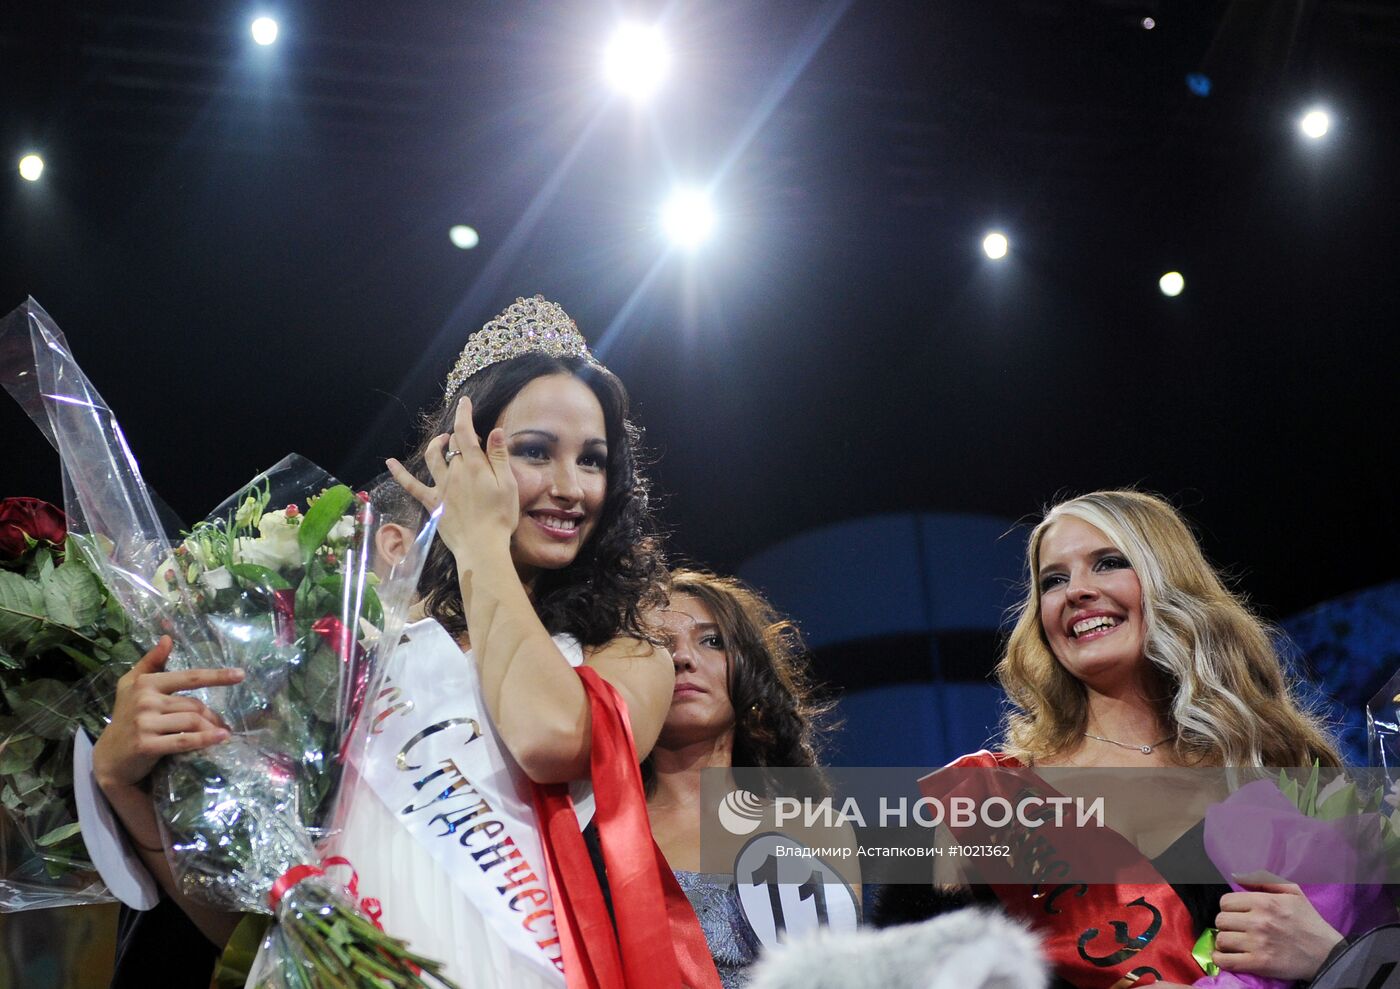 Конкурс "Мисс студенчество 2012" в Москве